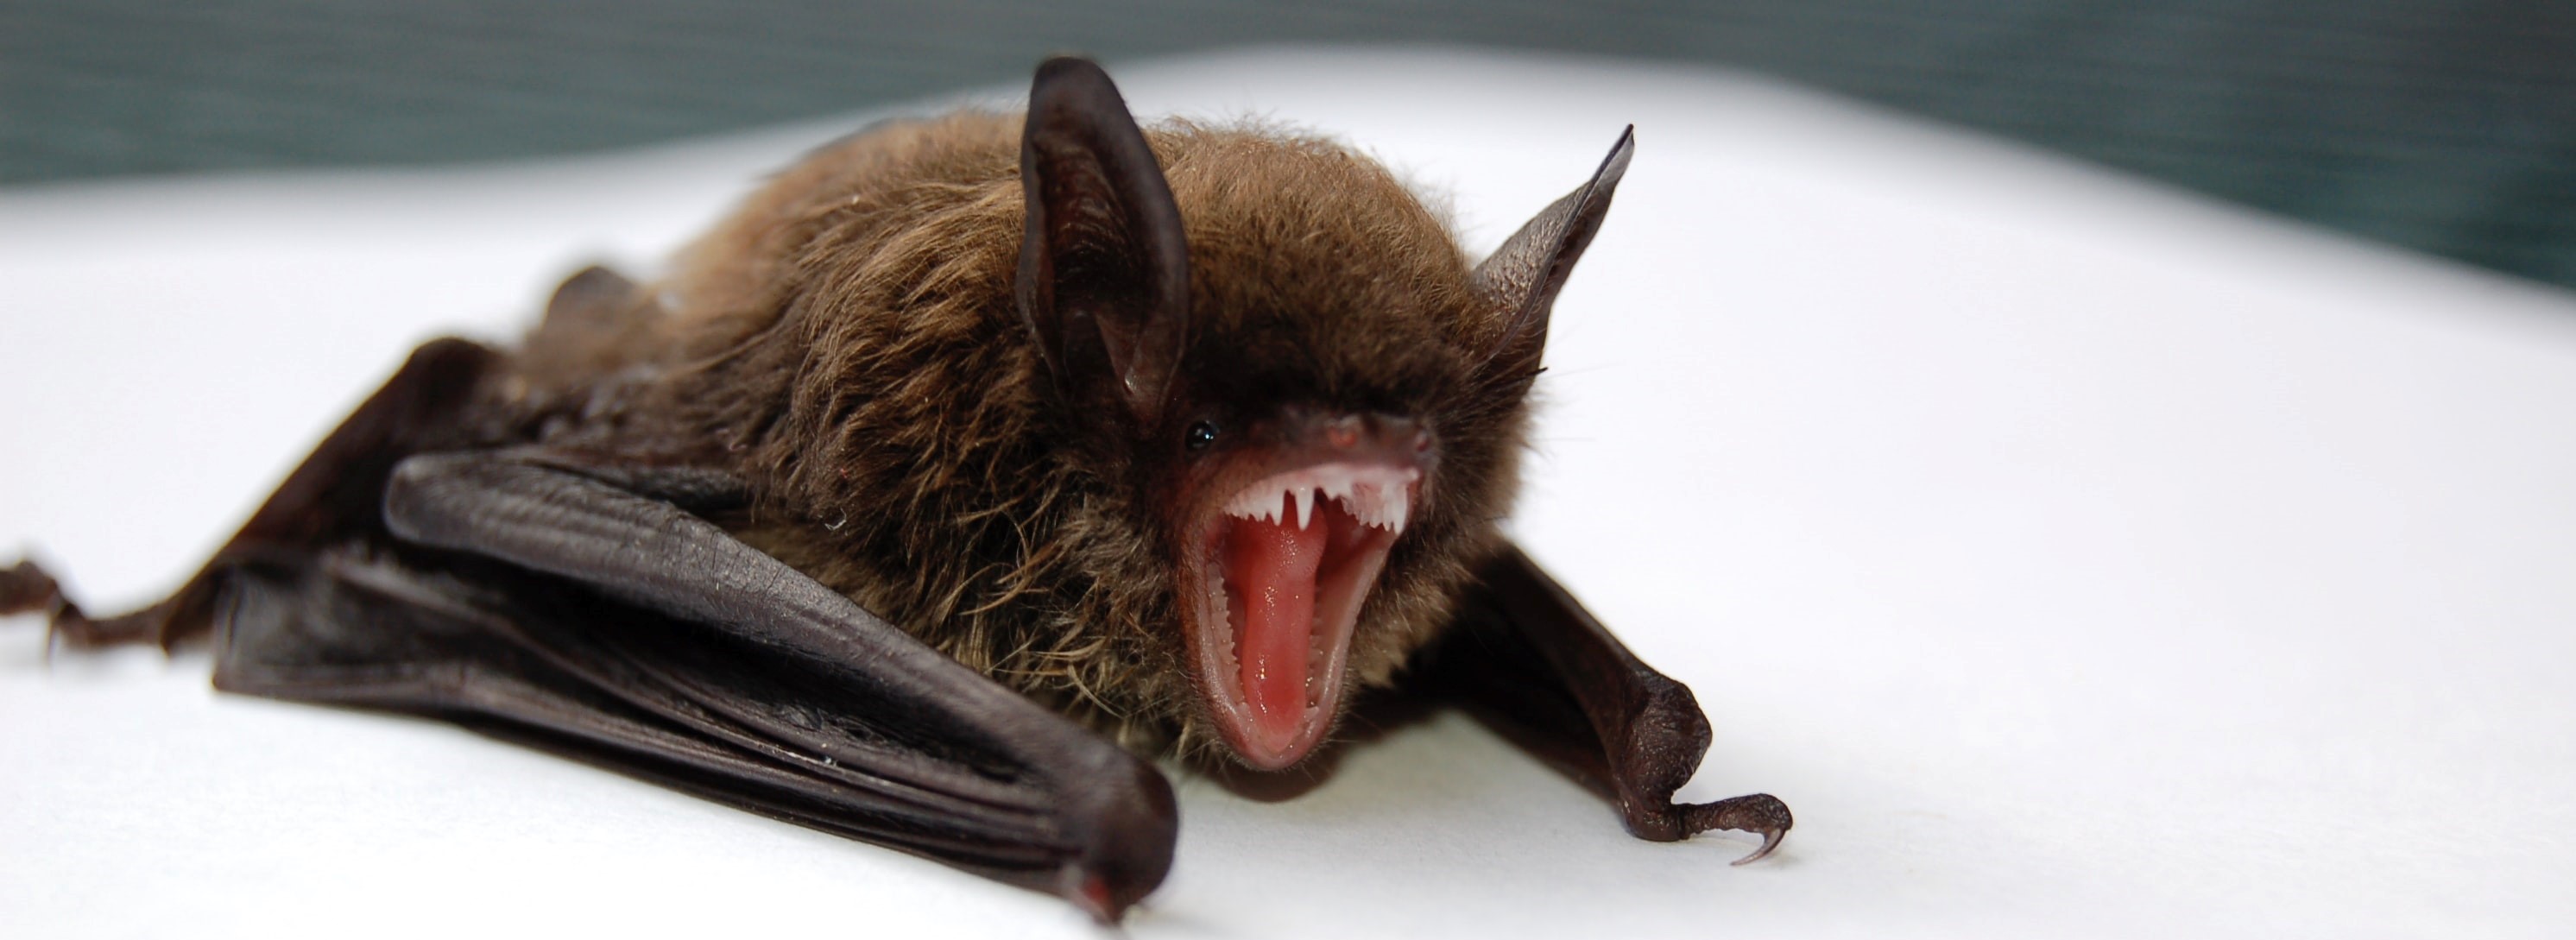 bat upset cropped